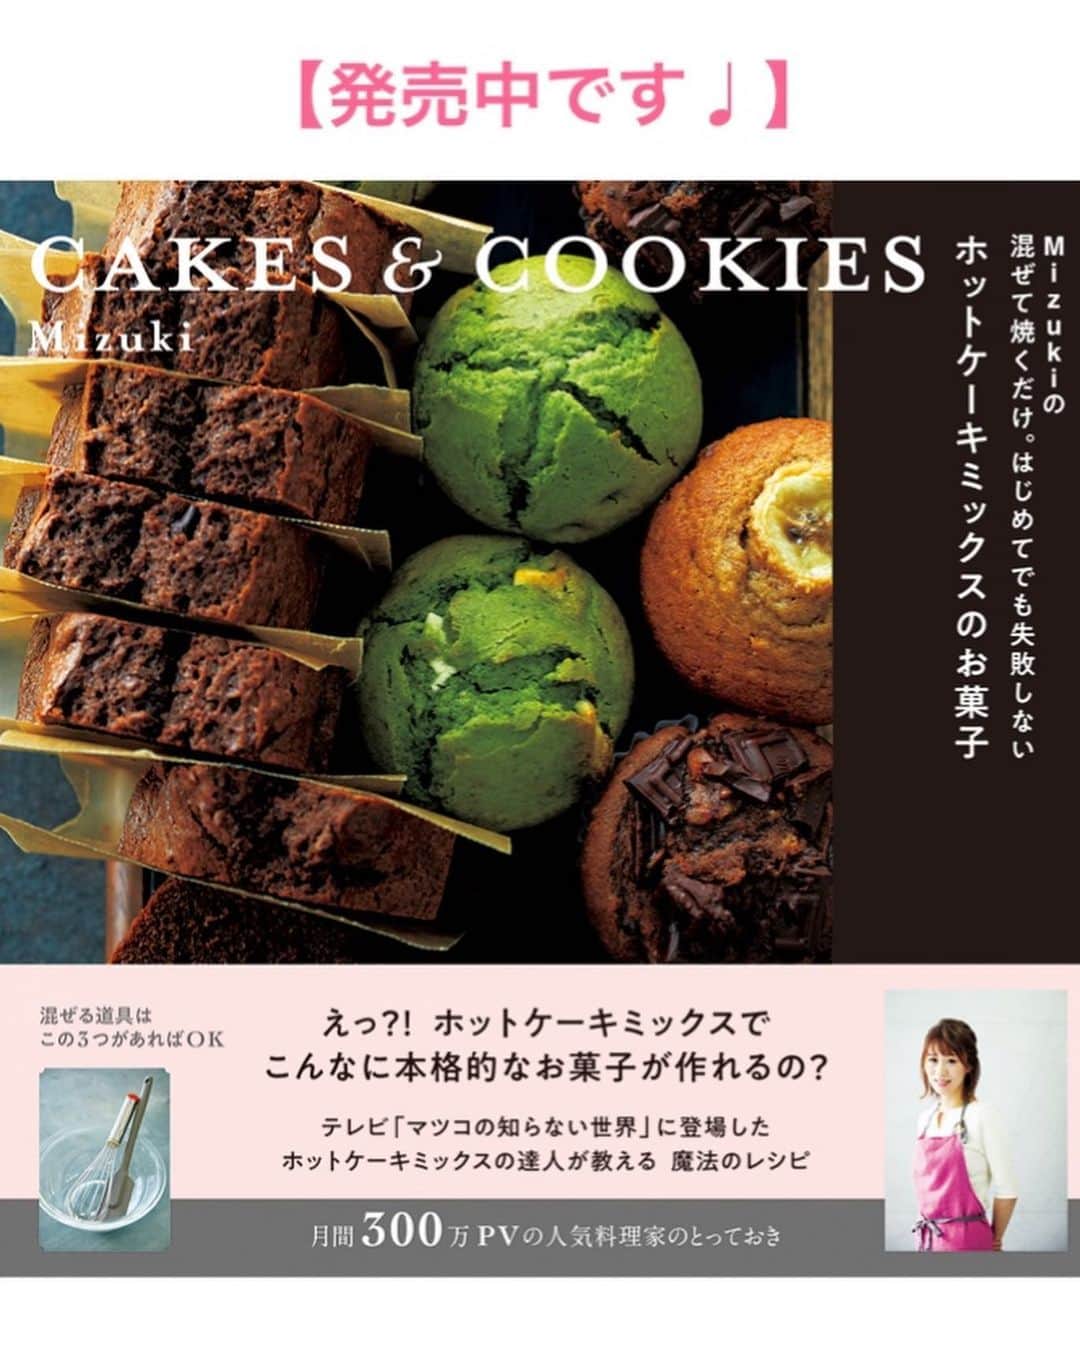 Mizuki【料理ブロガー・簡単レシピ】さんのインスタグラム写真 - (Mizuki【料理ブロガー・簡単レシピ】Instagram)「・﻿ 【レシピ】ーーーーーーーーーー﻿ ♡こってり甘辛肉味噌うどん♡﻿ ーーーーーーーーーーーーーーー﻿ ﻿ ﻿ ﻿ おはようございます(*^^*)﻿ ﻿ 今日はやみつき麺レシピ！﻿ 肉味噌うどんのご紹介です♩﻿ ﻿ (毎年やってますが•••笑)﻿ これとってもおすすめ(*´艸`)﻿ こってり甘辛い肉味噌と﻿ シャキシャキきゅうりが相性抜群！﻿ うどん一玉では足りないくらい﻿ やみつきになる味わいですよ♡﻿ ﻿ ちなみに、今回はうどんですが﻿ そうめんや中華麺、ごはんにも合うので﻿ よかったらお試し下さいね(*^^*)﻿ お酢やラー油をかけても美味しいです♩﻿ ﻿ ﻿ ﻿ ーーーーーーーーーーーーーーーーーーーー﻿ 【2人分】﻿ 冷凍うどん...2玉﻿ きゅうり...1本﻿ 合びき肉...150g﻿ ●水...50ml﻿ ●砂糖・醤油・酒・味噌...各大1﻿ ●片栗粉...小1﻿ ●にんにく・生姜...各チューブ2cm﻿ ごま油...小1﻿ (好みで)卵黄...2個﻿ ﻿ 1. 冷凍うどんはレンジで加熱し、流水で冷やして水気を切る。きゅうりは千切りにする。●は合わせておく。﻿ 2.フライパンにごま油を入れて中火で熱し、ひき肉を炒める。火が通ったら●を加え、混ぜながらとろみを付ける。﻿ 3.器にうどんを盛り、きゅうり、2の順にのせ、卵黄をトッピングする。﻿ ーーーーーーーーーーーーーーーーーーーー﻿ ﻿ ﻿ ﻿ 《ポイント》﻿ ♦︎お好みでお酢やラー油をかけても美味しいです♩﻿ ♦︎合びき肉の代わりに豚ひき肉で作っても♩﻿ ﻿ ﻿ ﻿ ﻿ ﻿ ﻿ ﻿ 🔻入荷しました🔻﻿ ストーリーにリンク貼っています🙇‍♀️﻿ ＿＿＿＿＿＿＿＿＿＿＿＿＿＿＿＿＿＿＿﻿ 📕\ \ 新刊発売中 / /📕﻿ 簡単・時短！ 毎日のごはんがラクになる﻿ ✨🦋 【 #Mizukiの今どき和食 】🦋✨﻿ ＿＿＿＿＿＿＿＿＿＿＿＿＿＿＿＿＿＿＿﻿ ﻿ なるべく少ない材料で﻿ 手間も時間も省きながら﻿ 簡単にできるおいしい和食レシピ♩﻿ 簡単に失敗なくマスターできる一冊で﻿ もっと気軽に、カジュアルに﻿ 和食を楽しんで下さいね(*^^*)﻿ ﻿ ﻿ ーーー ⭐️PART.1 メインおかず ⭐️ーーー﻿ 素材別にレシピをご紹介しています♩﻿ 和食の定番から新定番まで﻿ どれも押さえておきたいメニューばかり。﻿ 肉じゃがはフライパンで！焼き豚はレンジで！﻿ ぶり大根は切り身を使って手軽に作ります♩﻿ ﻿ ーーー ☘️PART.2 サブおかず ☘️ーーー﻿ 年中手に入るお手頃野菜と﻿ 乾物や大豆、こんにゃくなどを使った﻿ 副菜レシピをたっぷり掲載！！﻿ 普段SNSではメインおかずばかりなので﻿ 本では副菜にも力を入れています(*^^*)﻿ ﻿ ーーー 🌸PART.3 ごはんと汁物 🌸ーーー﻿ ささっと作れる丼と麺、﻿ みんなで食べたいいなり寿司や﻿ 手巻きごはんもご紹介！﻿ 複数の炊き込みごはんと﻿ 味噌汁&和風スープも盛りだくさん！﻿ ﻿ ﻿ 各レシピのポイントは﻿ 【写真付きで丁寧に解説】﻿ 副菜レシピもたっぷりなので﻿ 【メインページに副菜メモもつけました】﻿ ＊このメインにはこの副菜が合いますよ〜﻿ という献立の提案です(*^^*)﻿ 【その他コラムも充実】﻿ 全127品中ほぼ全て﻿ 【本だけのレシピです！】﻿ ＿＿＿＿＿＿＿＿＿＿＿＿＿＿＿＿＿＿＿﻿ ﻿ ﻿ ﻿ ﻿ ﻿ ＿＿＿＿＿＿＿＿＿＿＿＿＿＿＿＿＿﻿ 🎀発売中🎀﻿ 【#ホットケーキミックスのお菓子 】﻿ ﻿ 一冊まるっとホケミスイーツ♩﻿ 普段のおやつから﻿ 特別な日にも使えるレシピを﻿ この一冊に詰め込みました(*^^*)﻿ ホットケーキミックスを使えば﻿ 簡単に本格的なお菓子が作れますよ♡﻿ ＿＿＿＿＿＿＿＿＿＿＿＿＿＿＿＿＿﻿ ﻿ ⭐️ストーリー、ハイライト、プロフ画面に﻿ 本のURLを貼らせていただいております♩﻿ →(@mizuki_31cafe )﻿ ﻿ ﻿ ﻿ ﻿ #ひき肉#肉味噌#肉味噌うどん#ジャージャーうどん#冷凍うどん#うちで過ごそう#おうち時間#Mizuki#簡単レシピ#時短レシピ#節約レシピ#料理#レシピ#フーディーテーブル#マカロニメイト#おうちごはん#デリスタグラマー#料理好きな人と繋がりたい#おうちごはん#lover#foodpic#follow#cooking#recipe#lin_stagrammer#stayhome#こってり甘辛肉味噌うどんm」6月4日 6時52分 - mizuki_31cafe